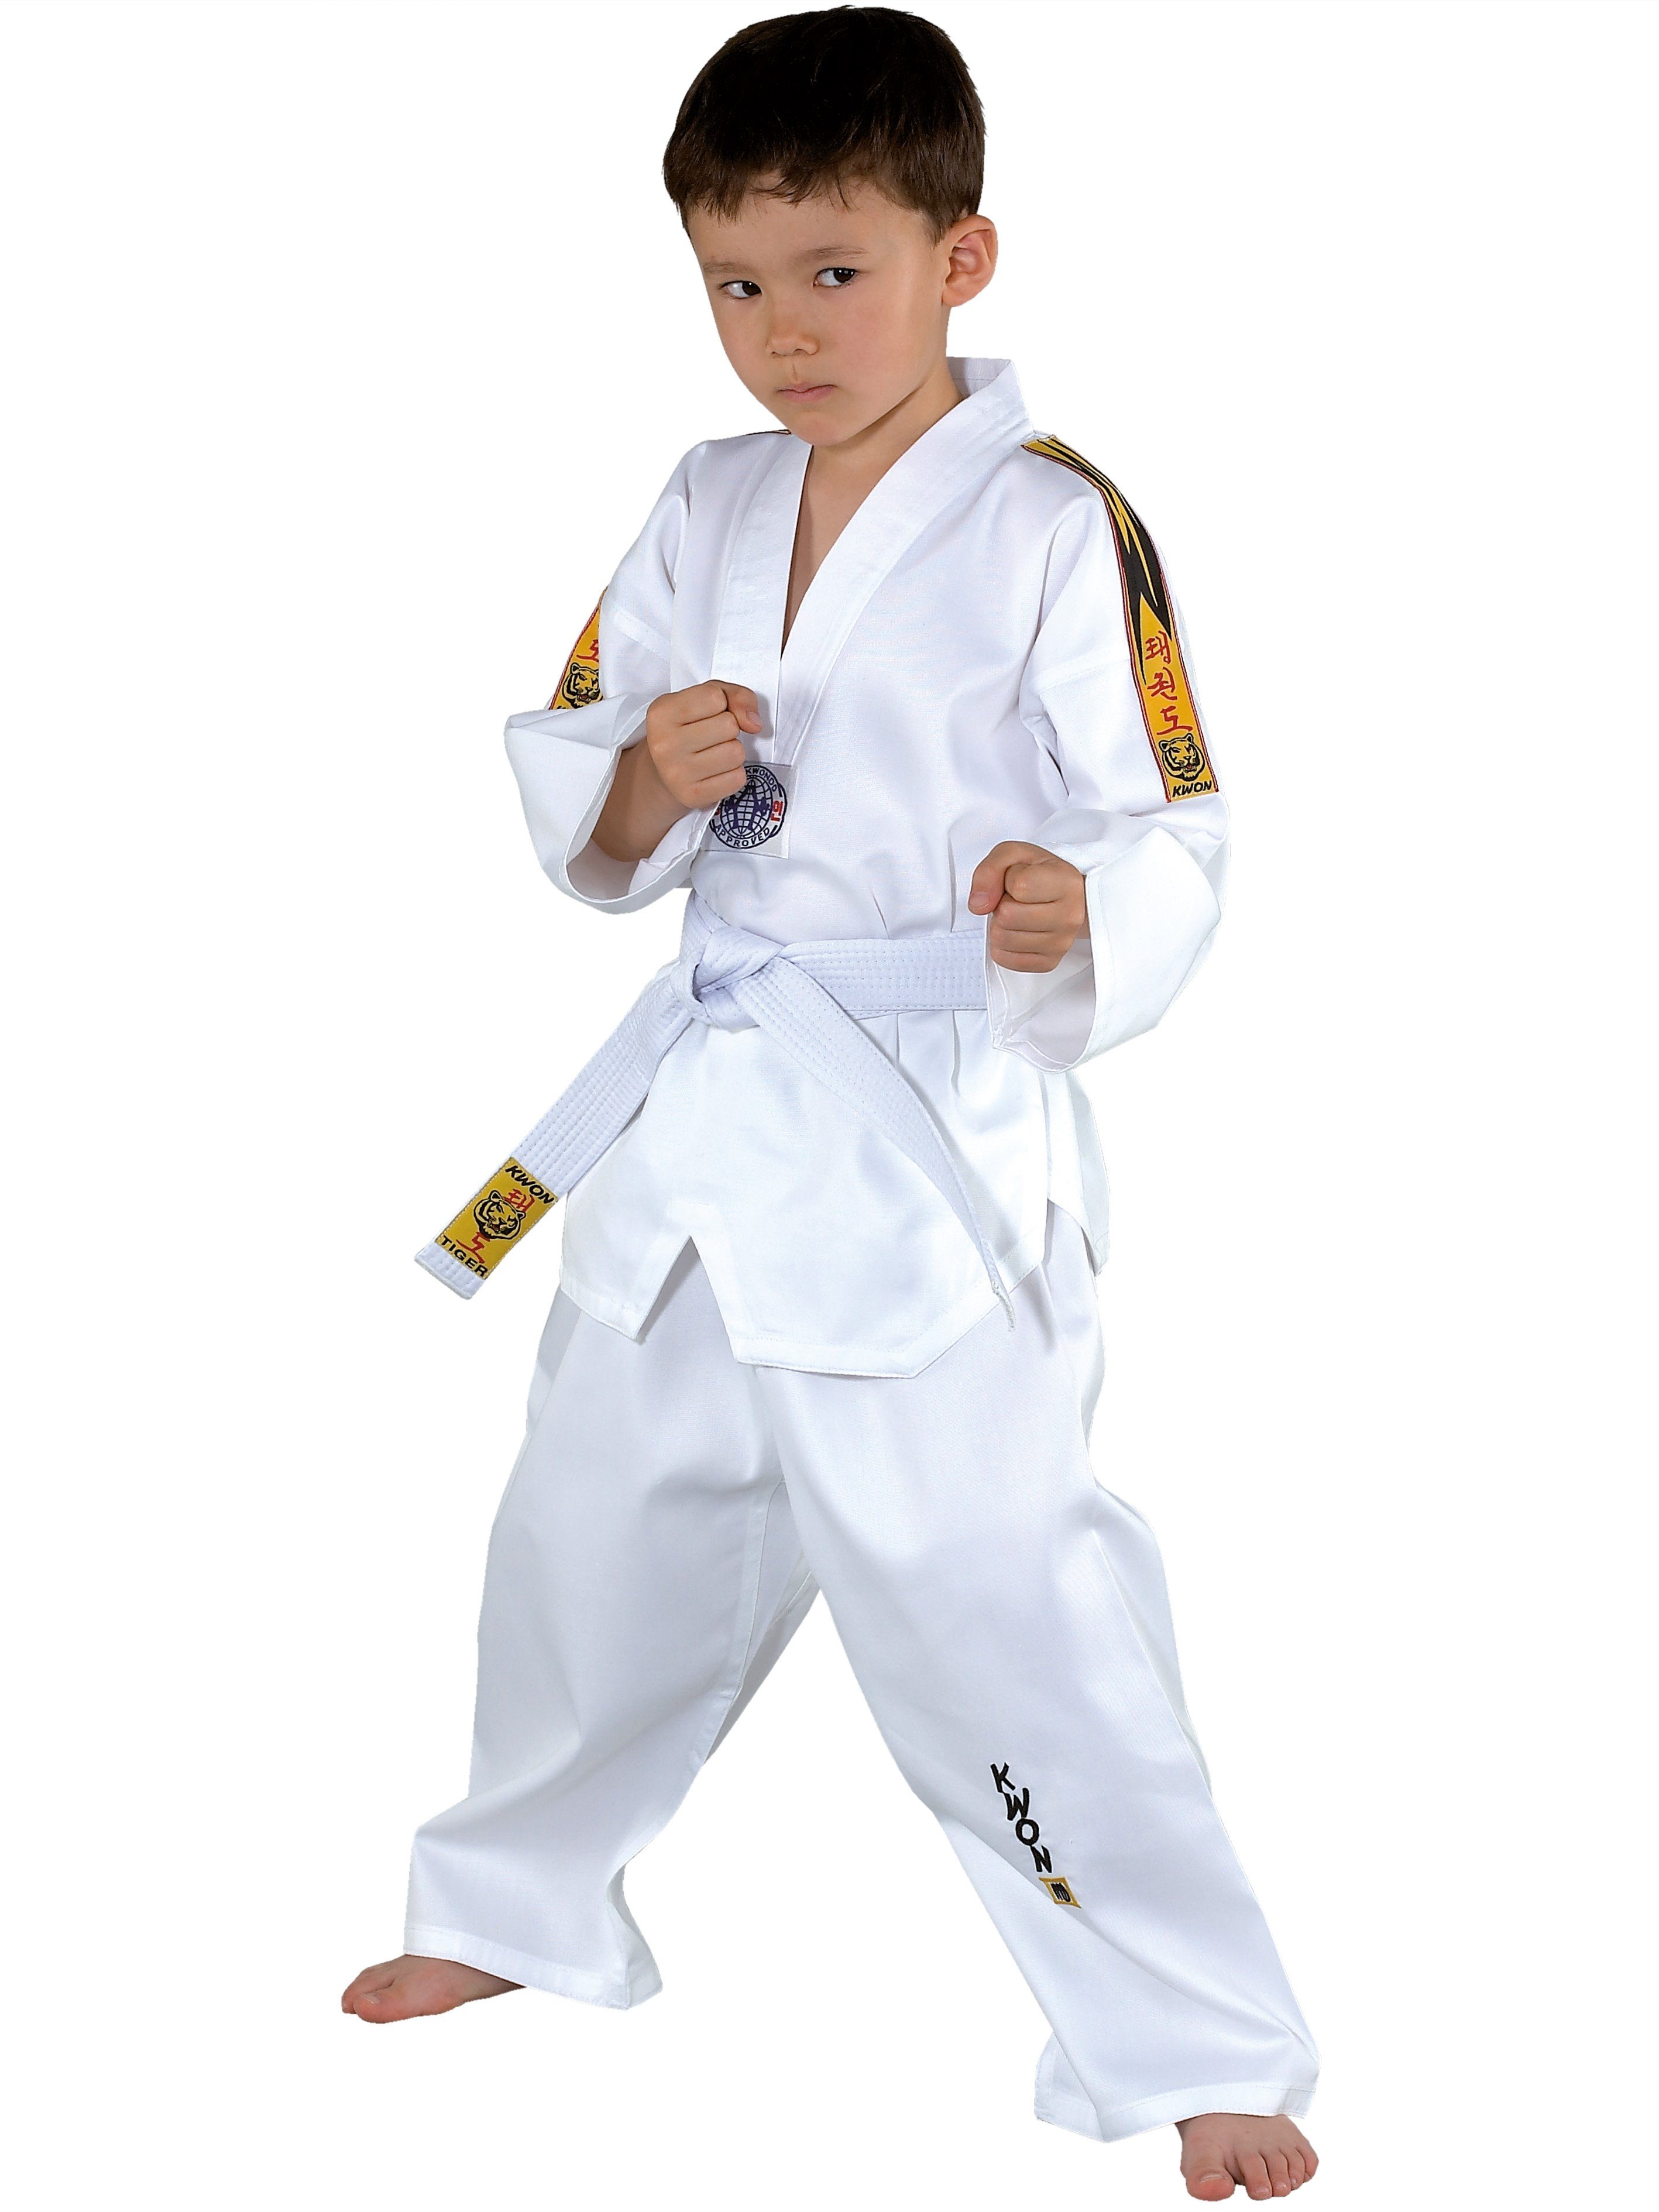 KWON Taekwondoanzug Tiger Taekwondo Anzug mit Gürtel Hose und Jacke Club Line Schulterstreifen (3-teilig, komplett), Kinder, Jugendlich, Erwachsene, Größen: 90 - 180 cm, weiß